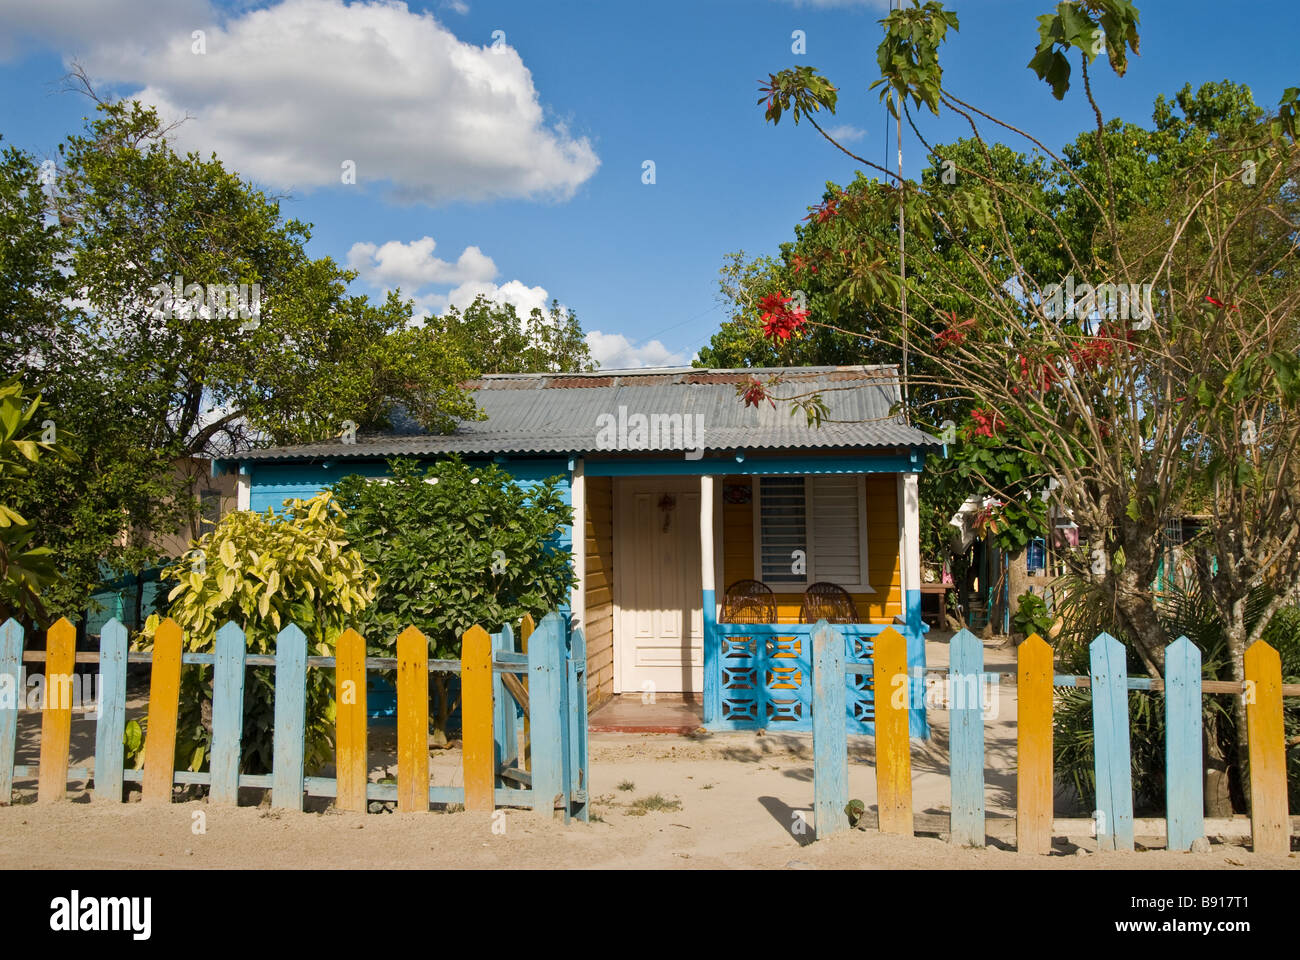 Casa de madera tradicional colorido pueblo pesquero Bayahibe aferrarse al estilo de vida tradicional a pesar del impacto del turismo Dominic Dominicana Foto de stock